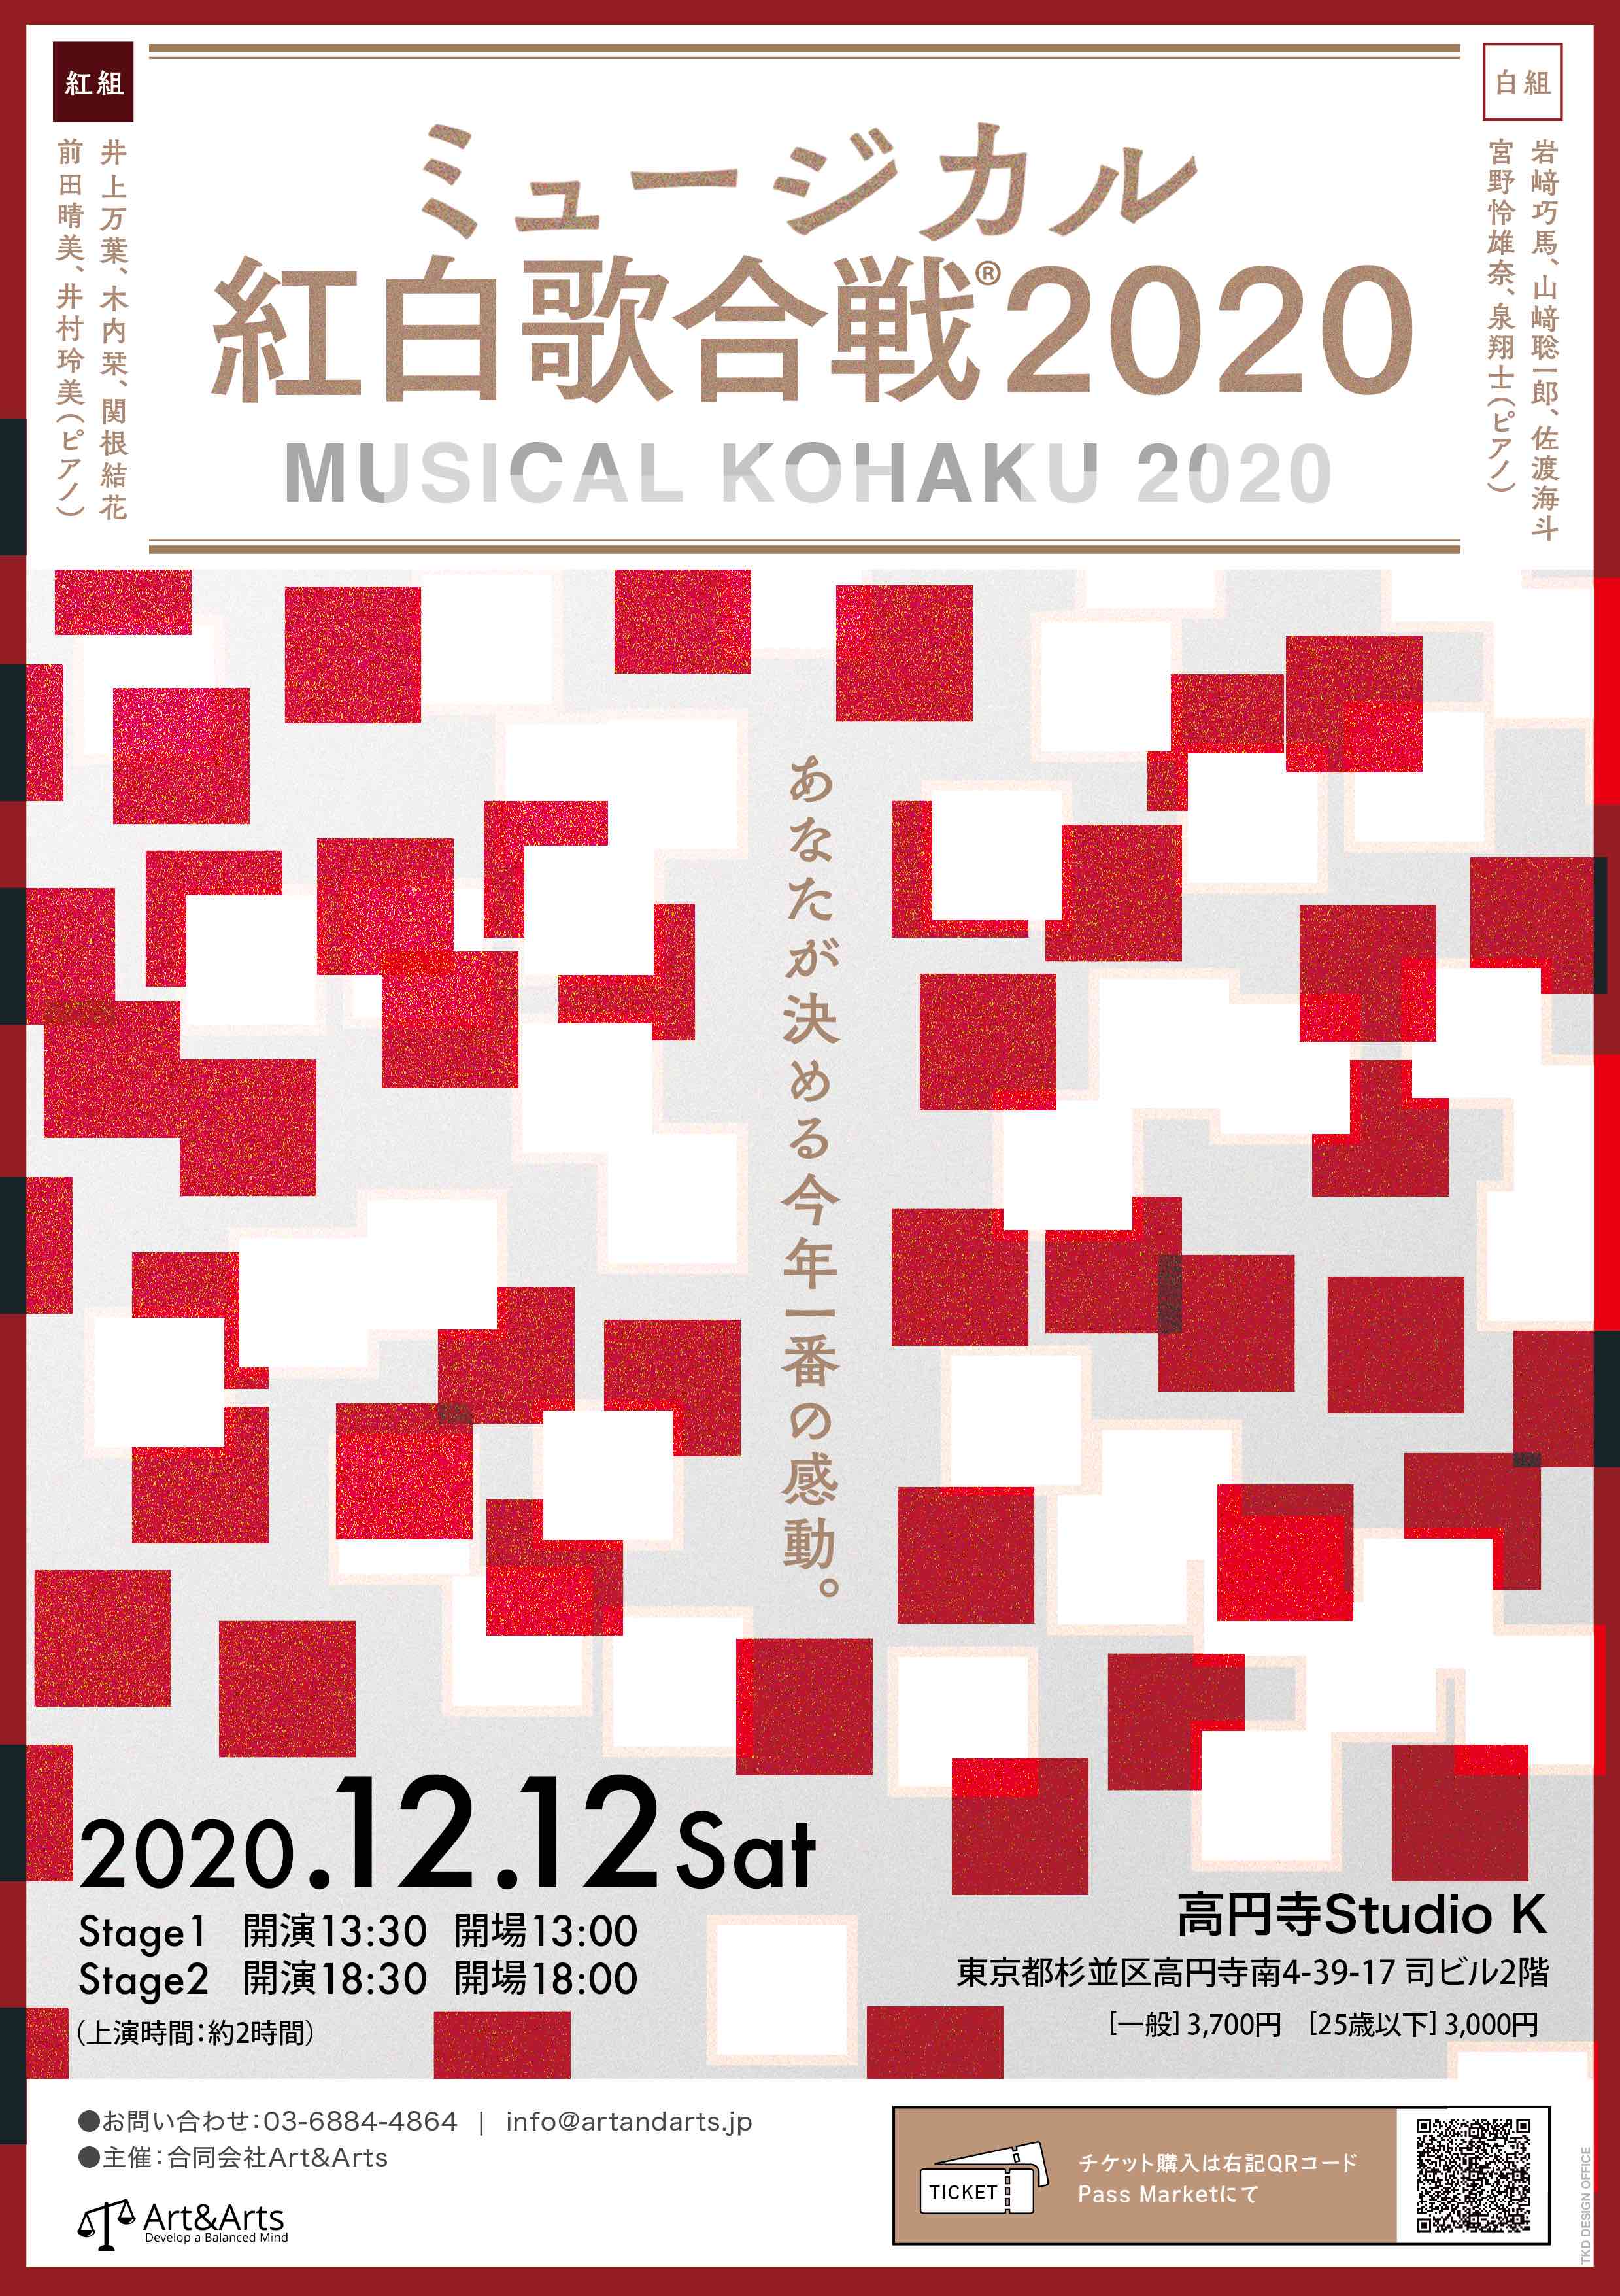 年12月12日 ミュージカル紅白歌合戦 を開催します 合同会社art Artsのプレスリリース